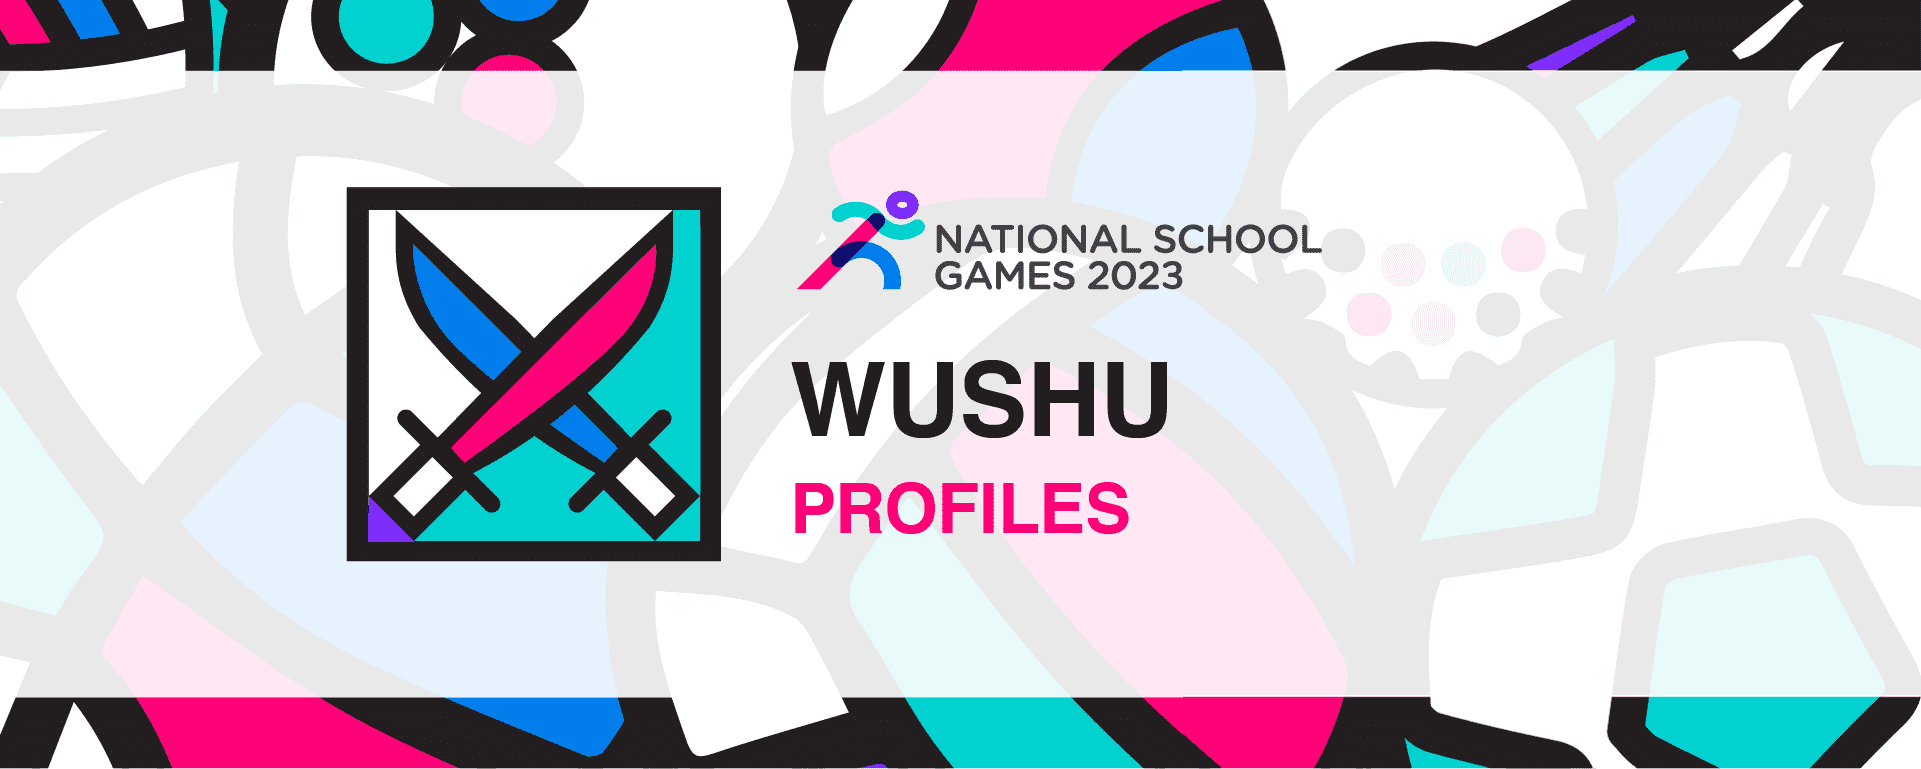 National School Games 2023 | Wushu | Profiles